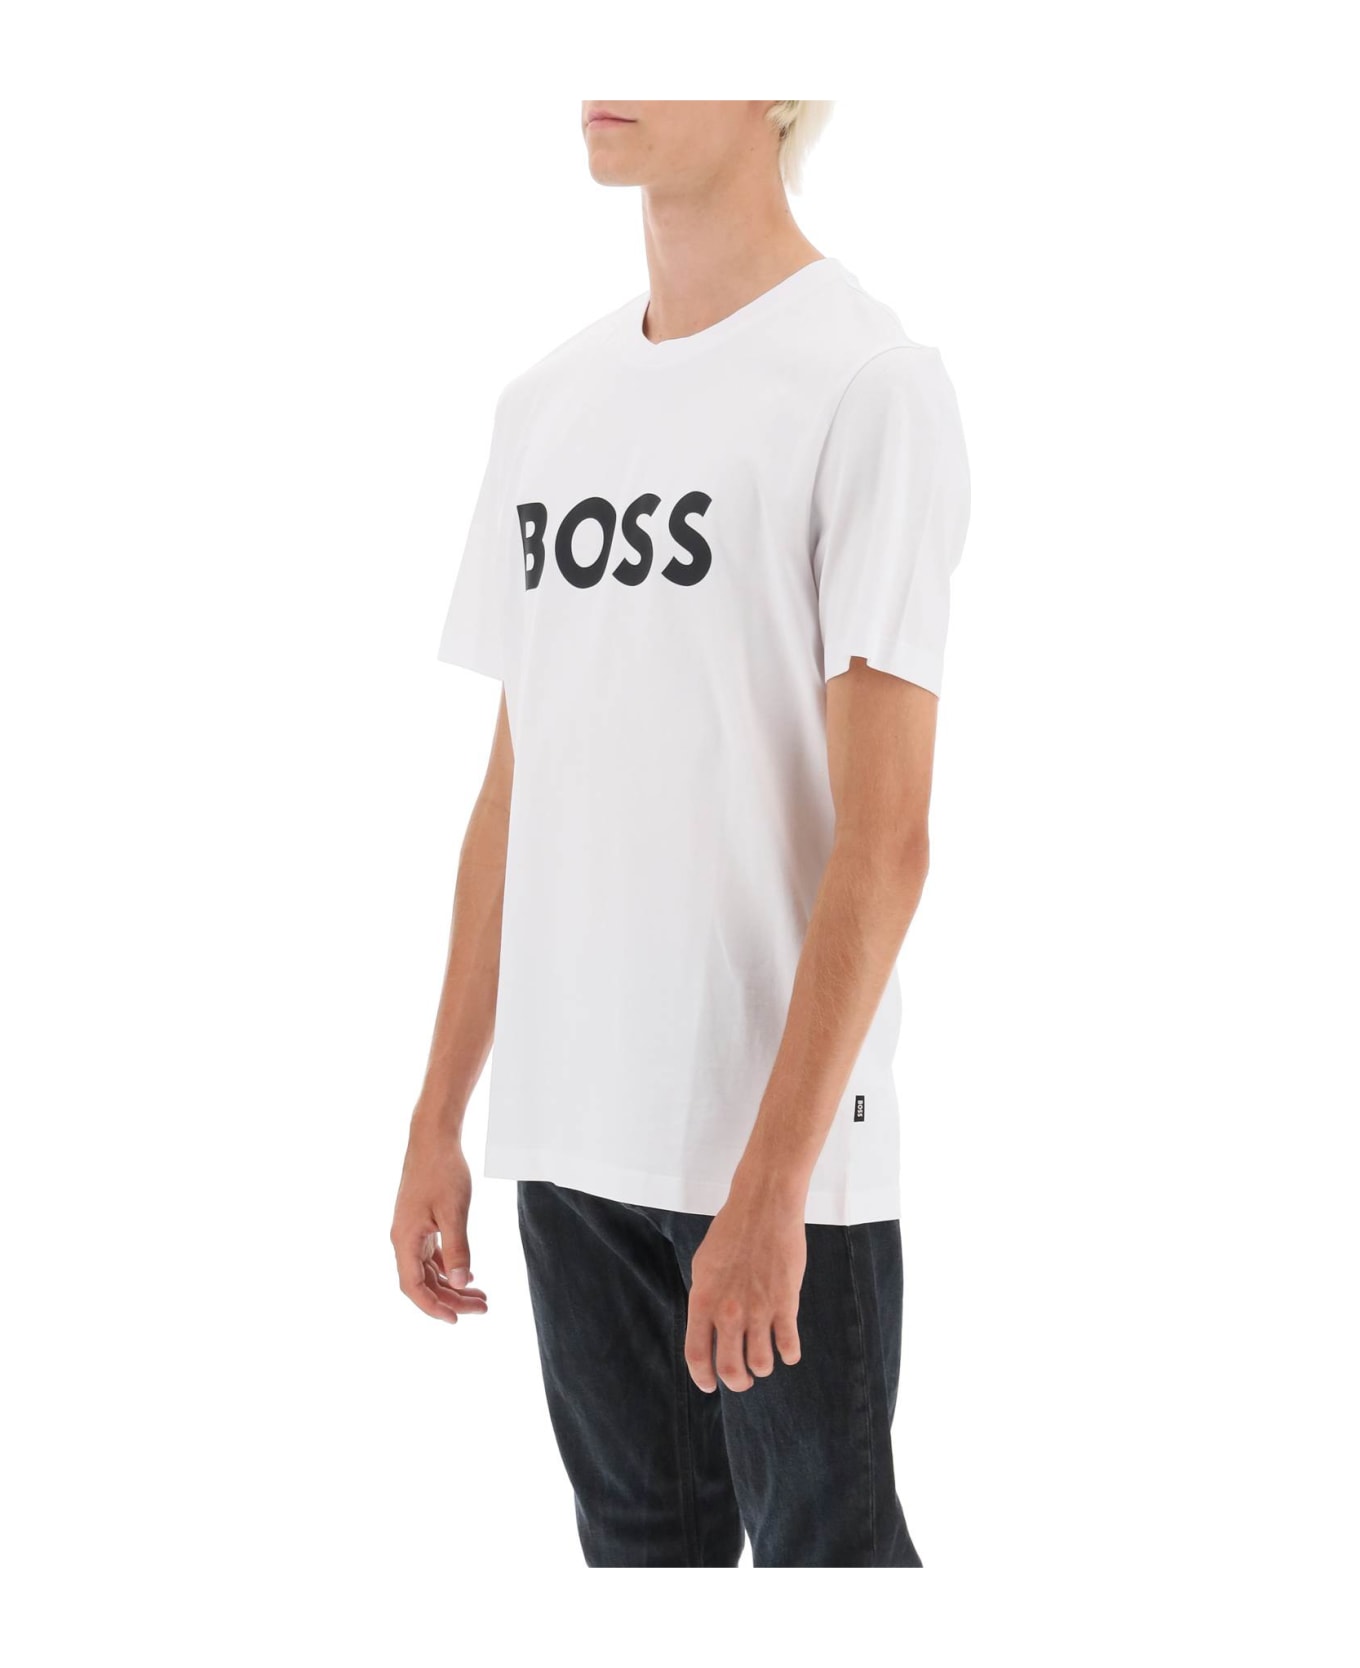 Hugo Boss Tiburt 354 Logo Print T-shirt - White